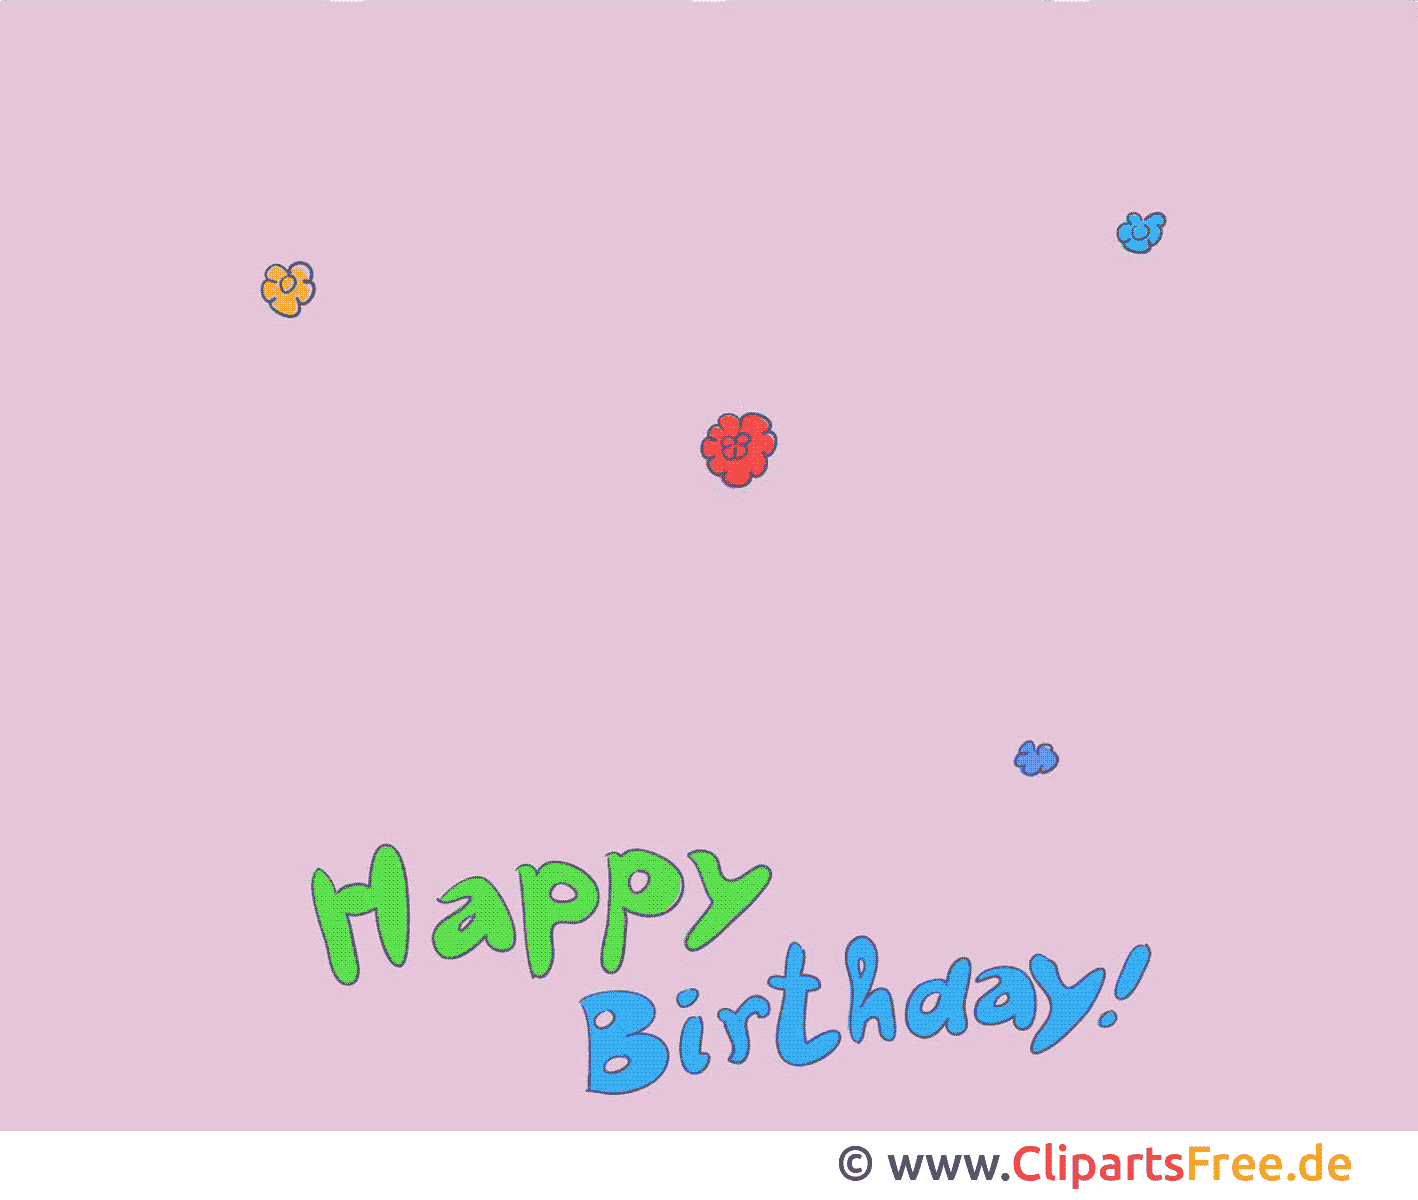 Bon anniversaire dessin gratuit - Animation image